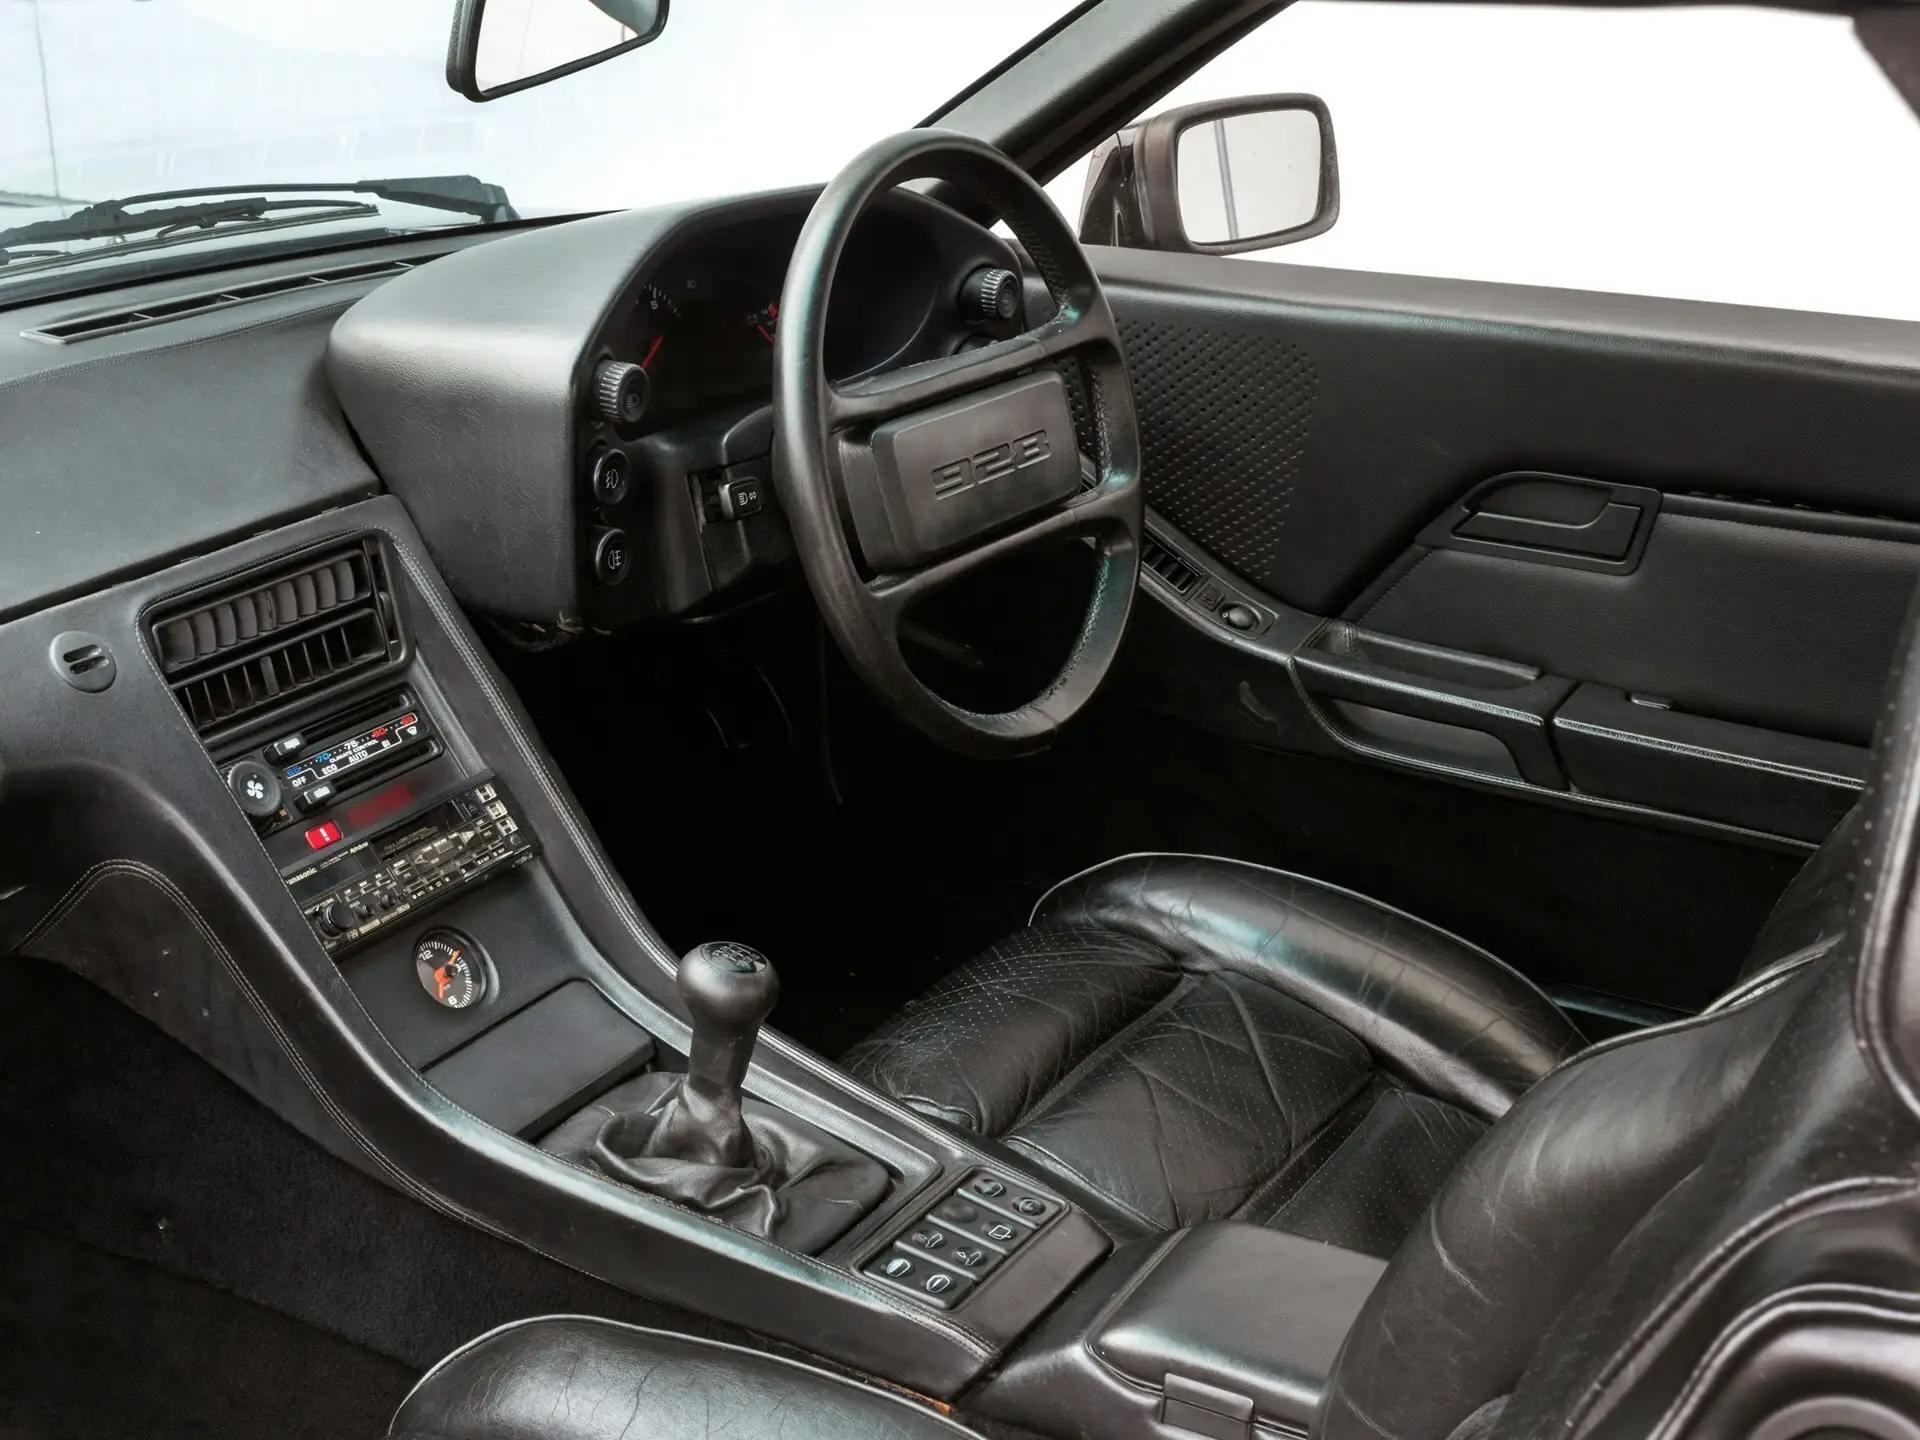 George Harrison's Porsche 928 - interior